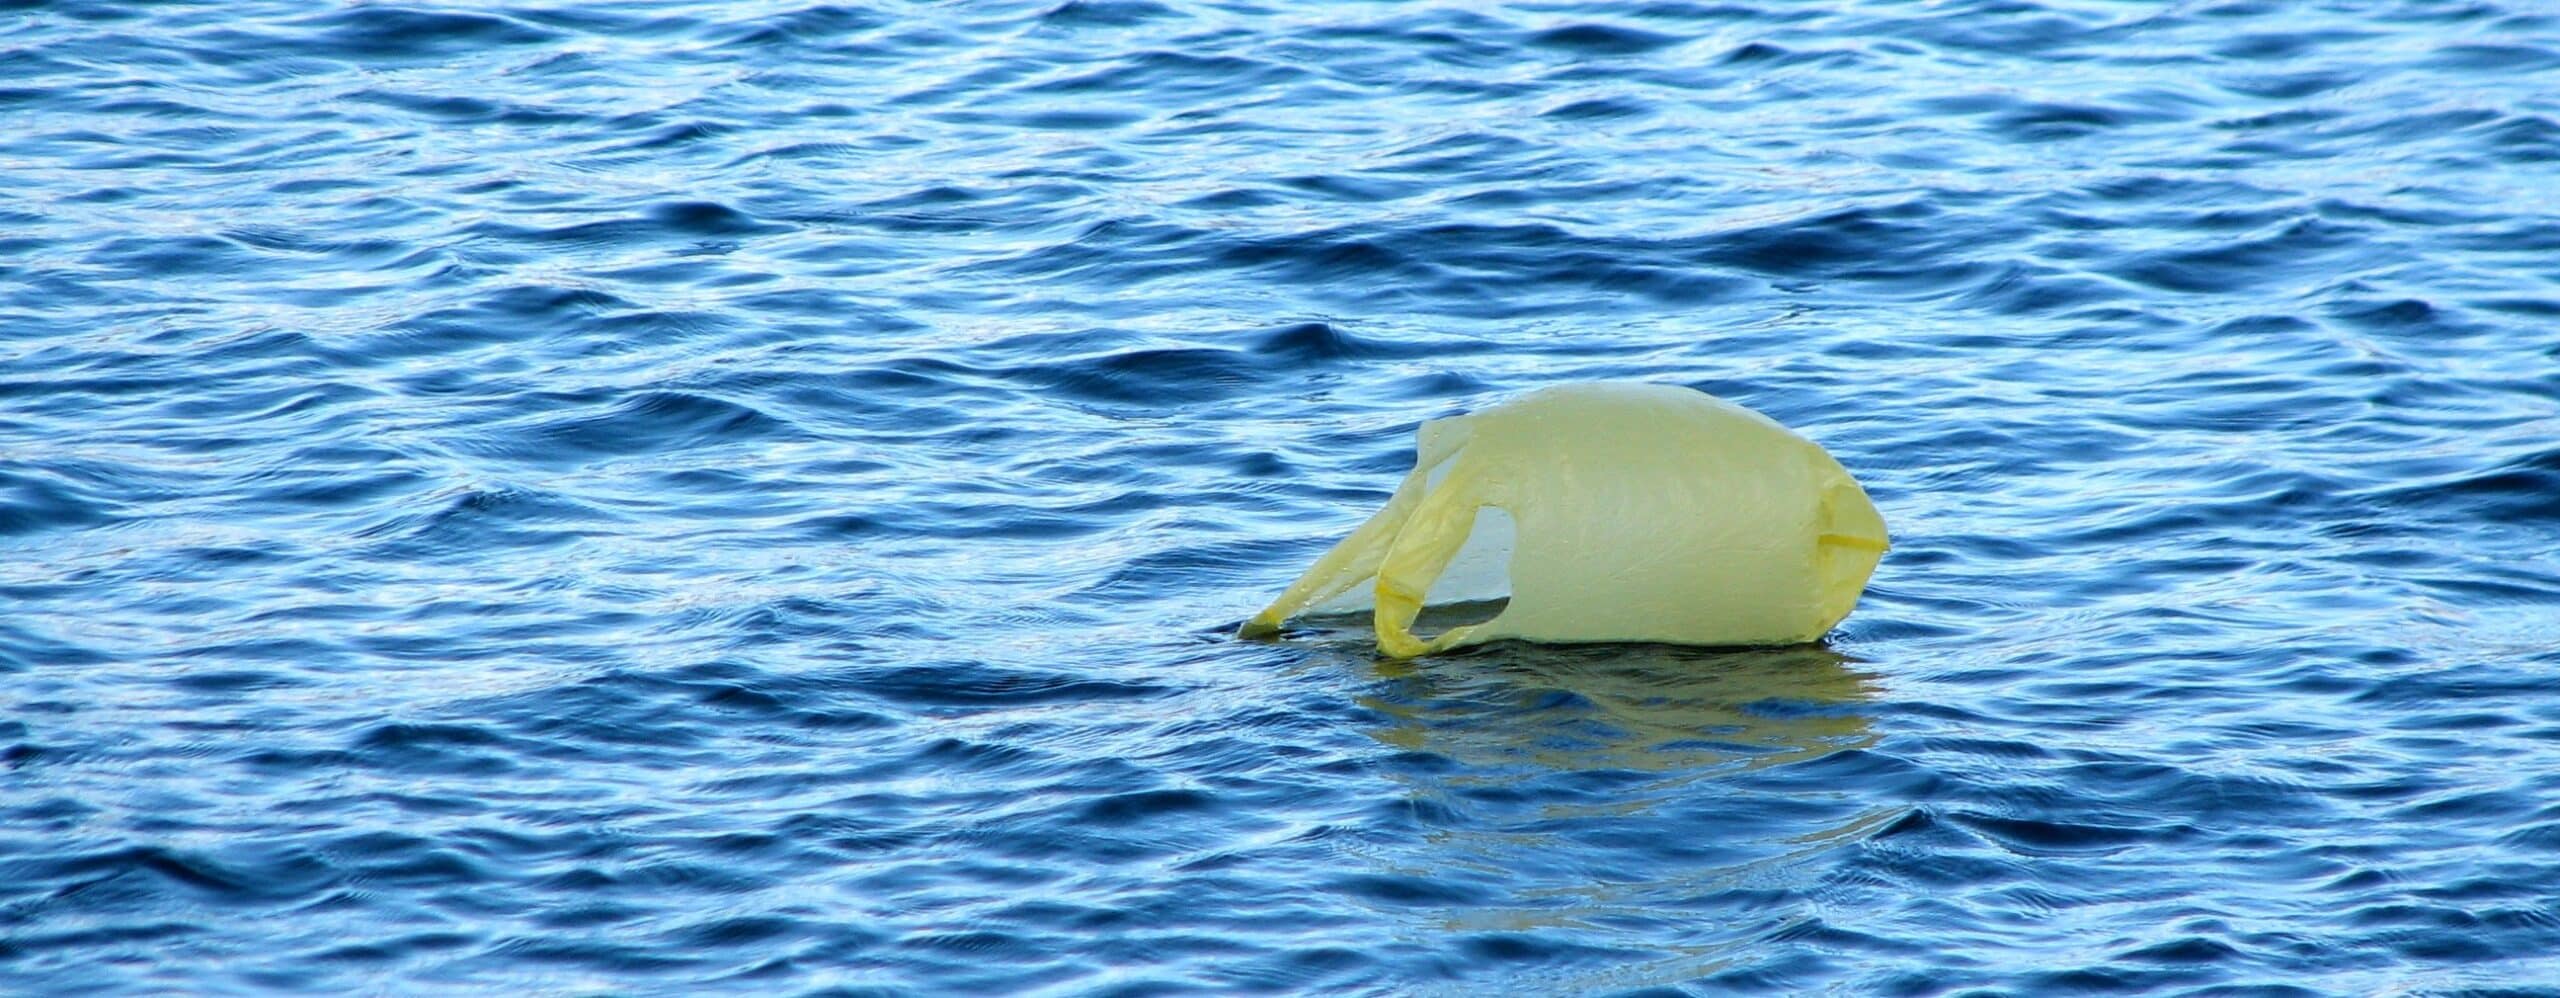 carrier bag floating in the ocean